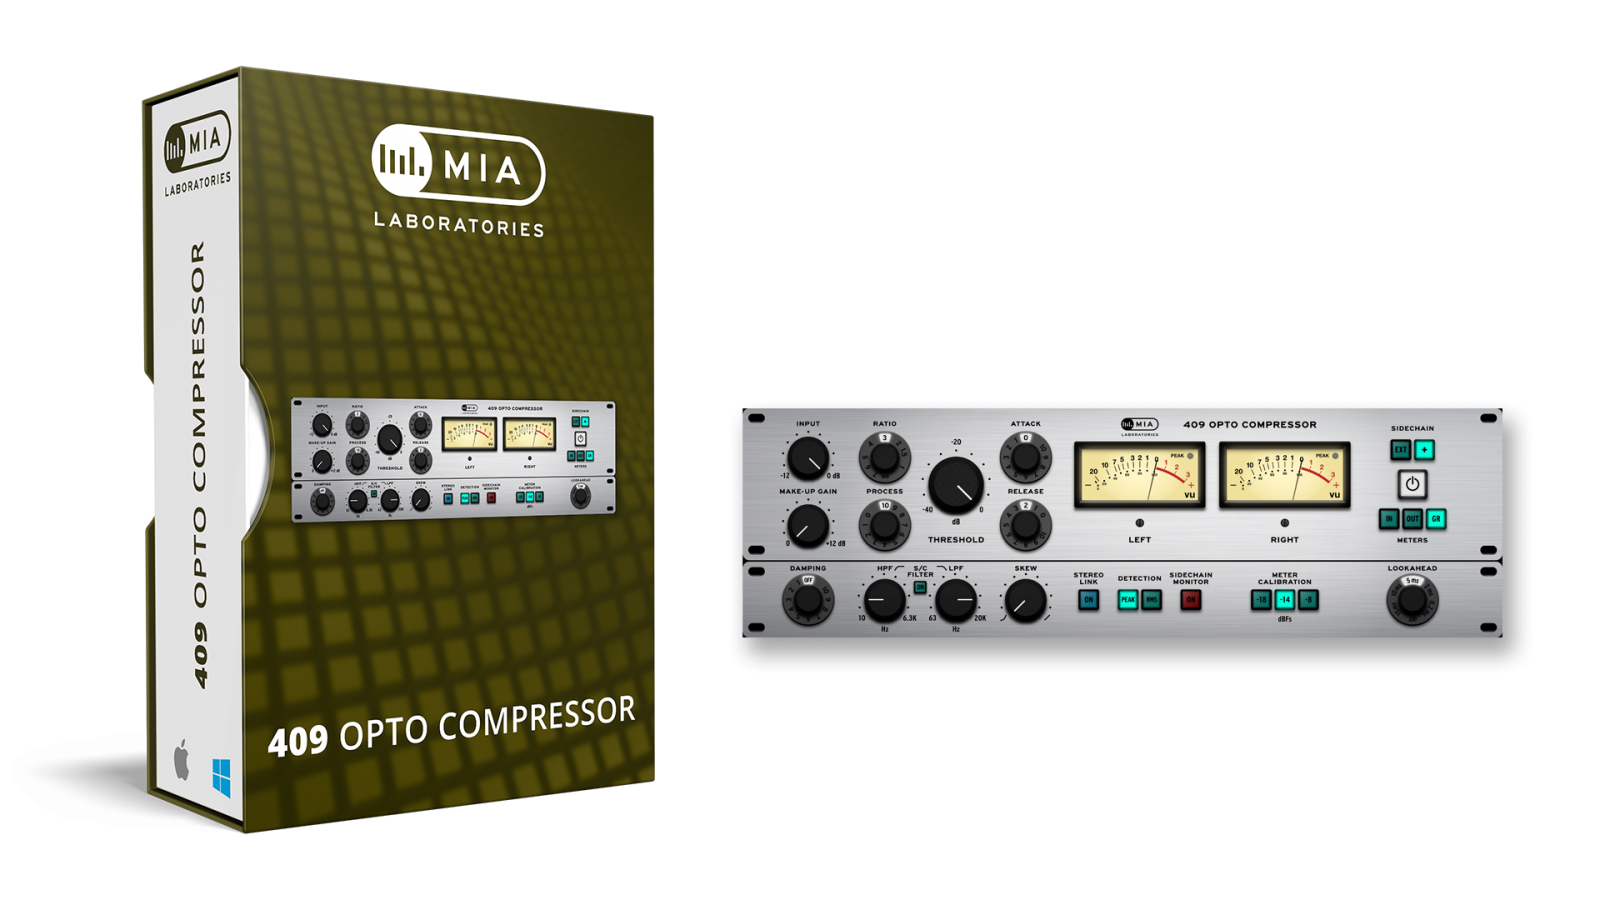 MIA Laboratories 409 Opto Compressor